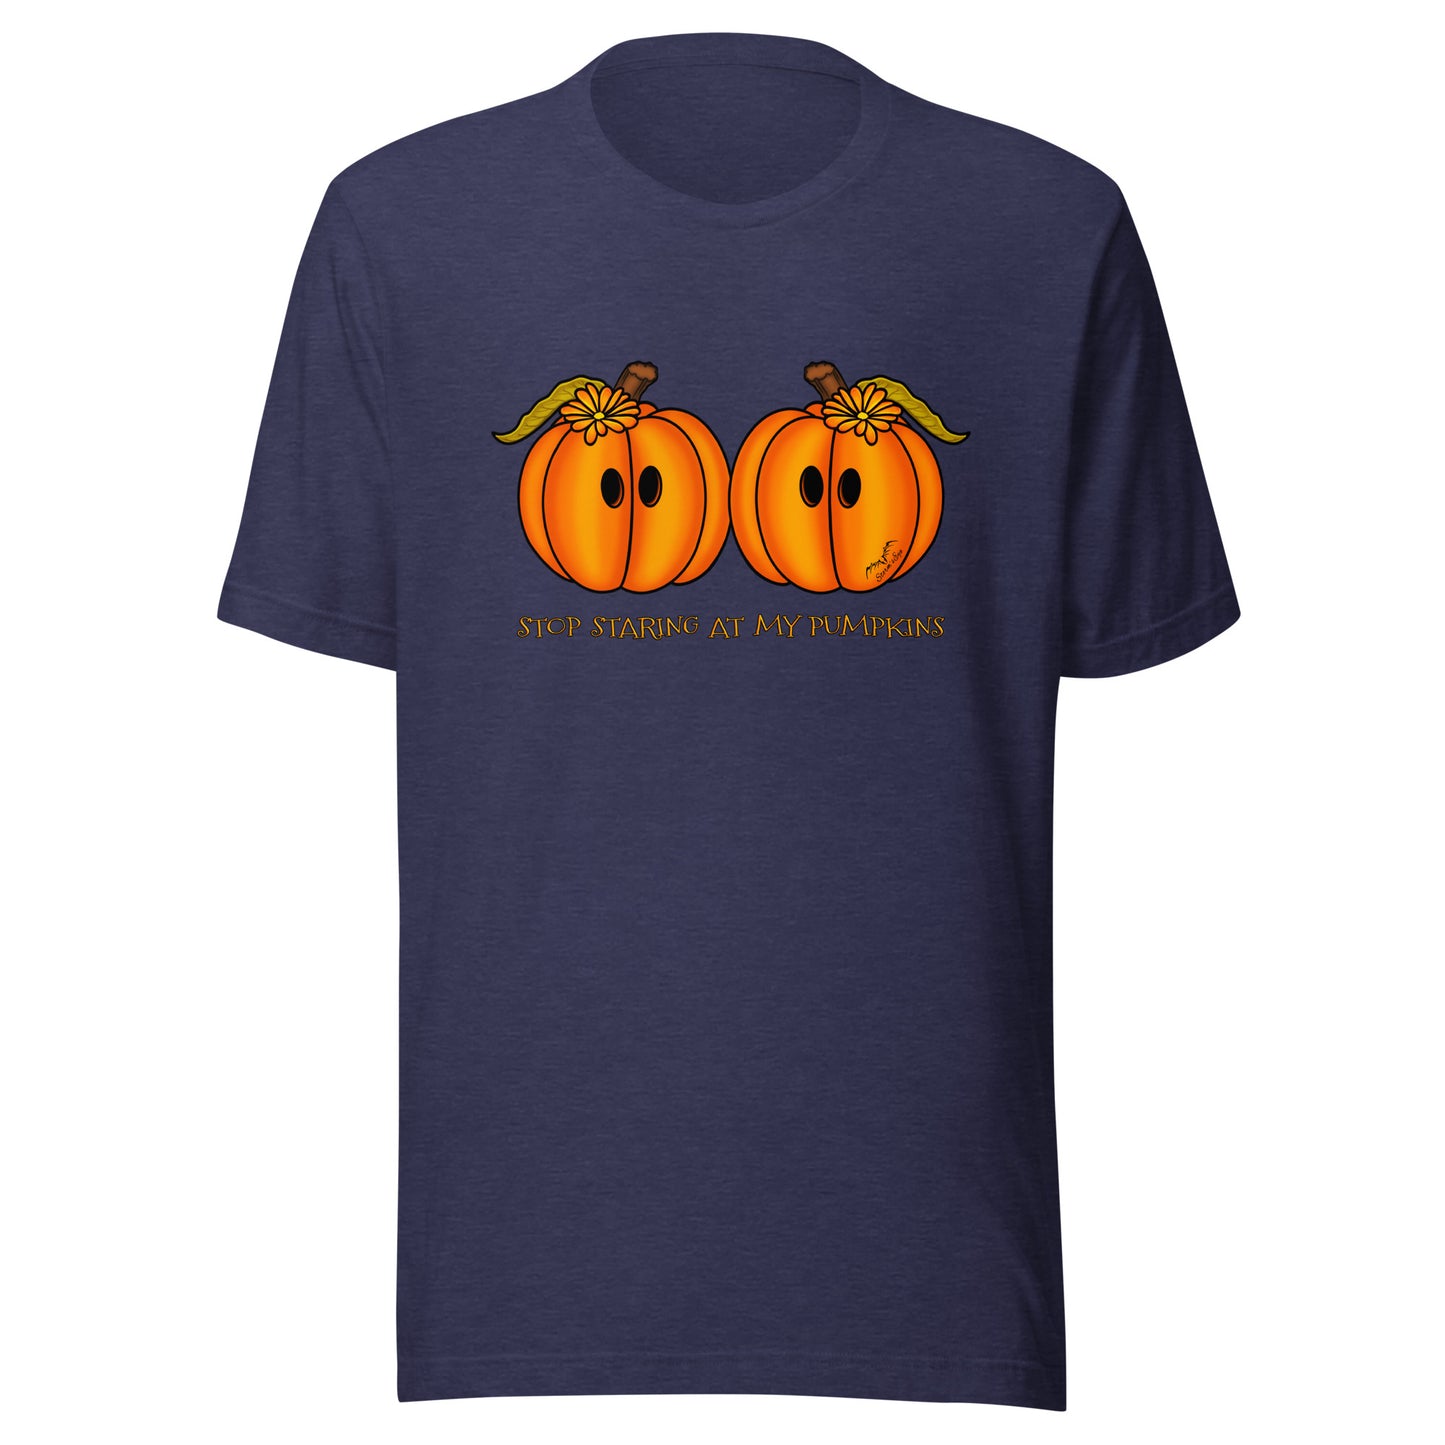 stormseye design staring pumpkins T shirt flat view navy blue